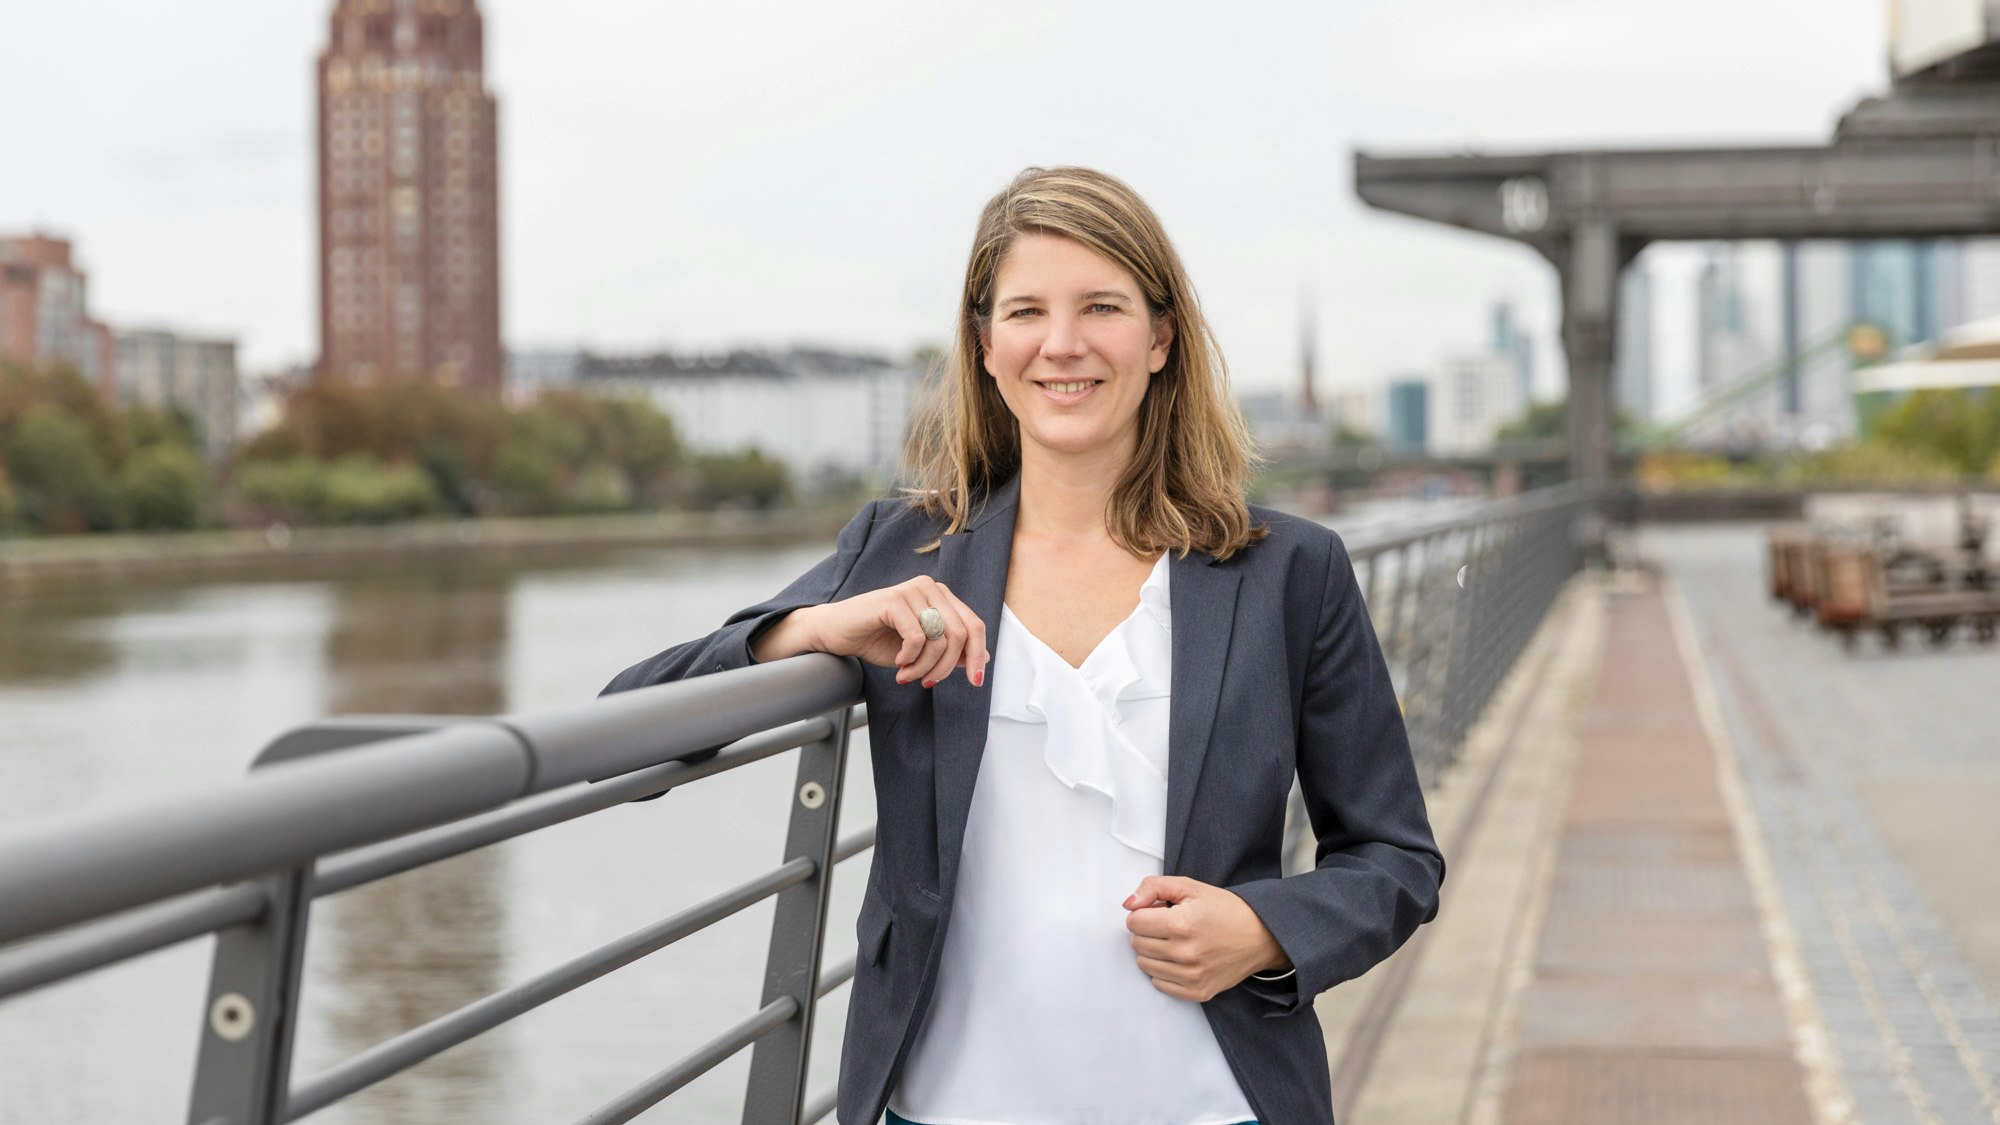 Isabel Schiller steht an einem hohen Geländer am Ufer eines großen Flusses in einer Stadt.